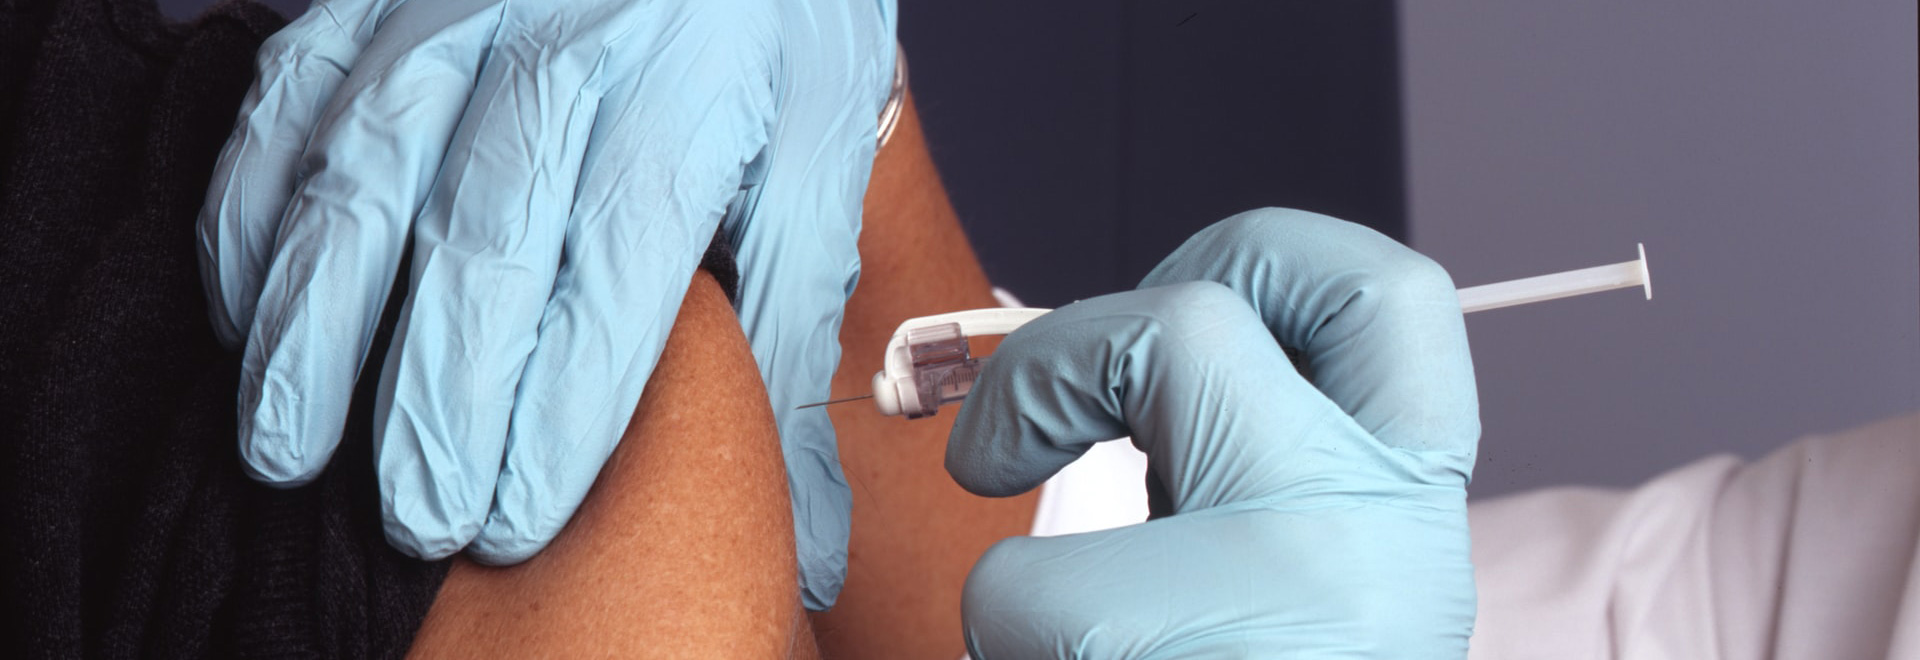 Conheça os protocolos de vacinação contra a Covid-19 da sua cidade